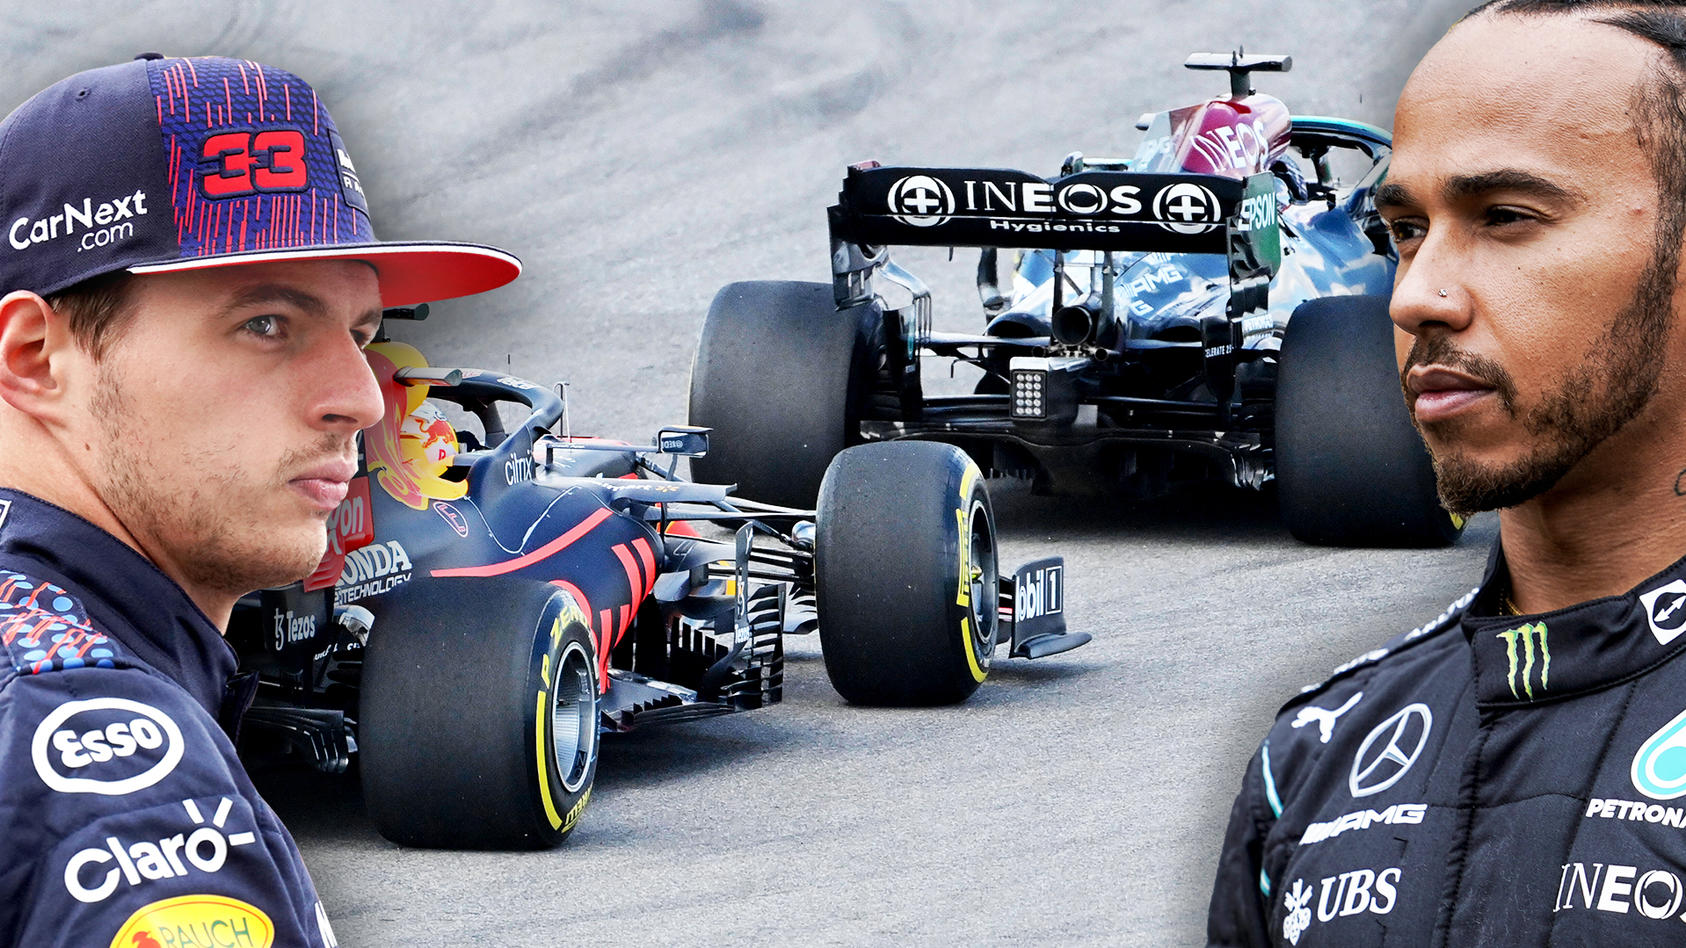 Formel 1 in Austin - Max Verstappen vs